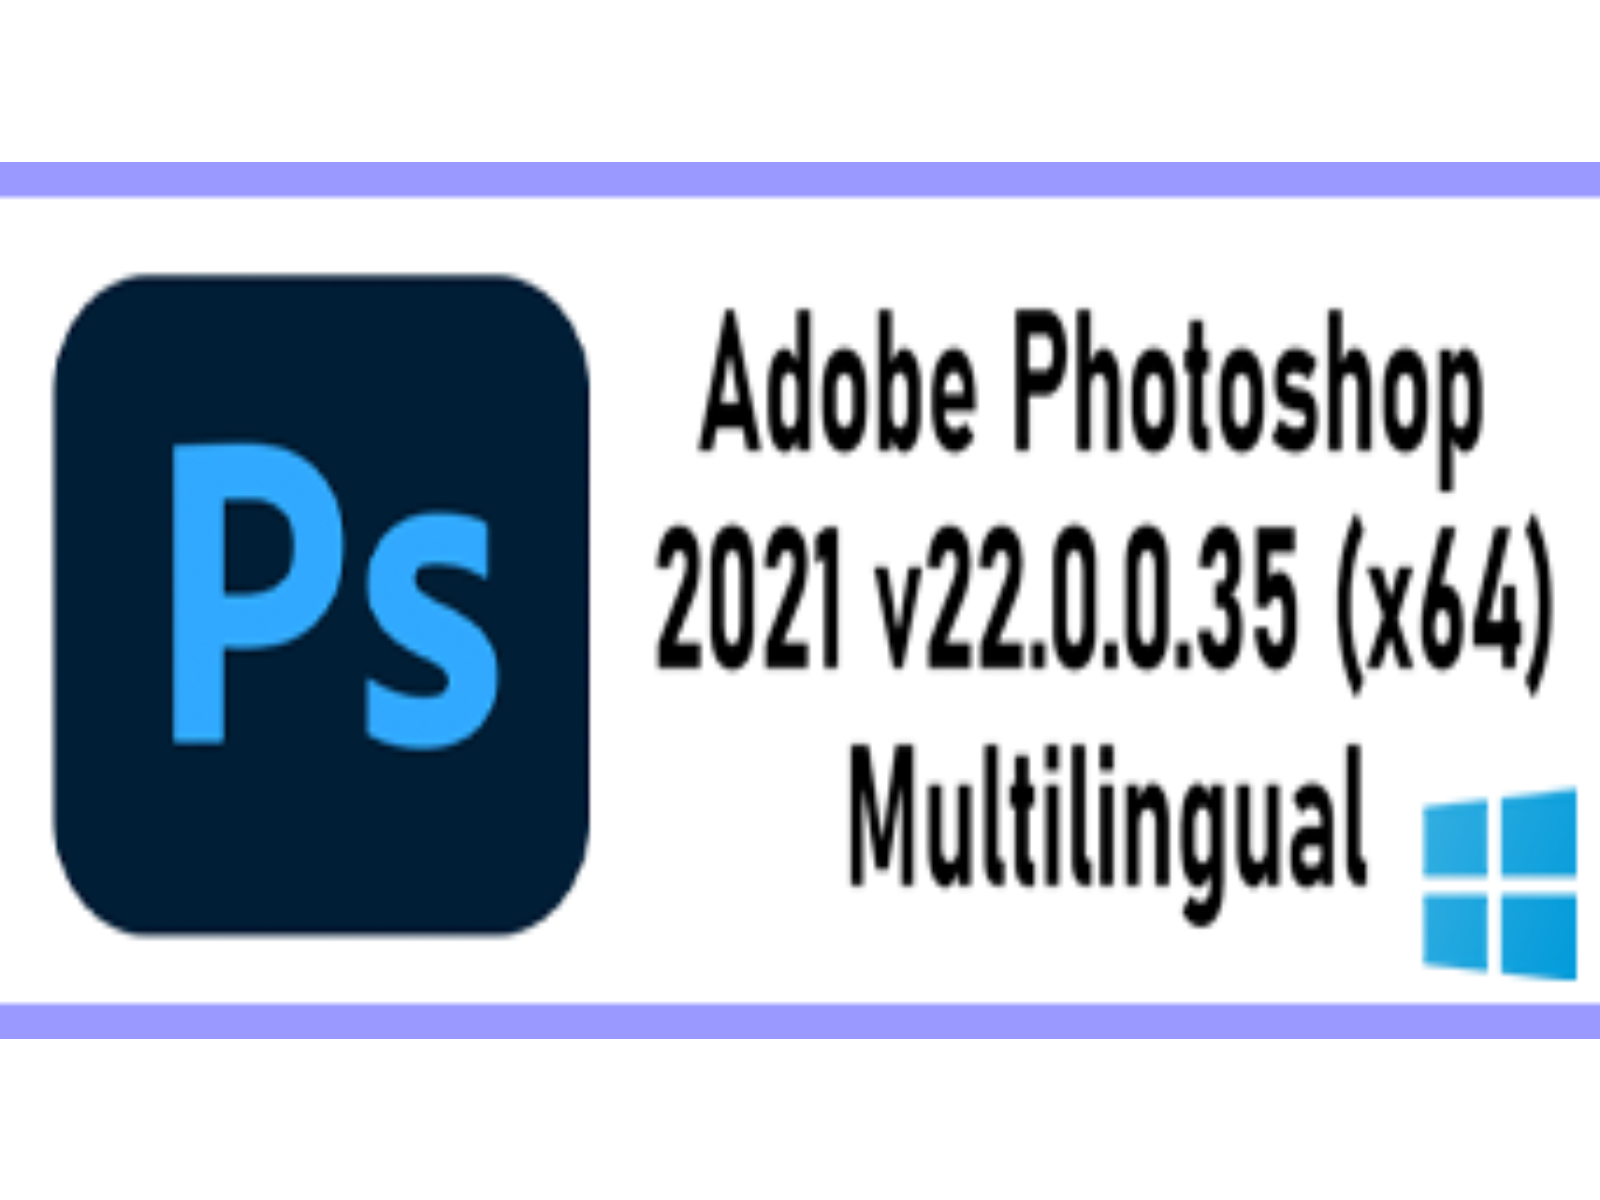 P‌h‌‍o‌t‌o‌‍s‌h‌o‌‍p 20‌21 v‌2‌2.0‌.0.‌35 (‌x64) ‌Mul‌ti‌l‌ing‌u‌al‌ ‌W‌i‌n‌d‌o‌w‌s‌